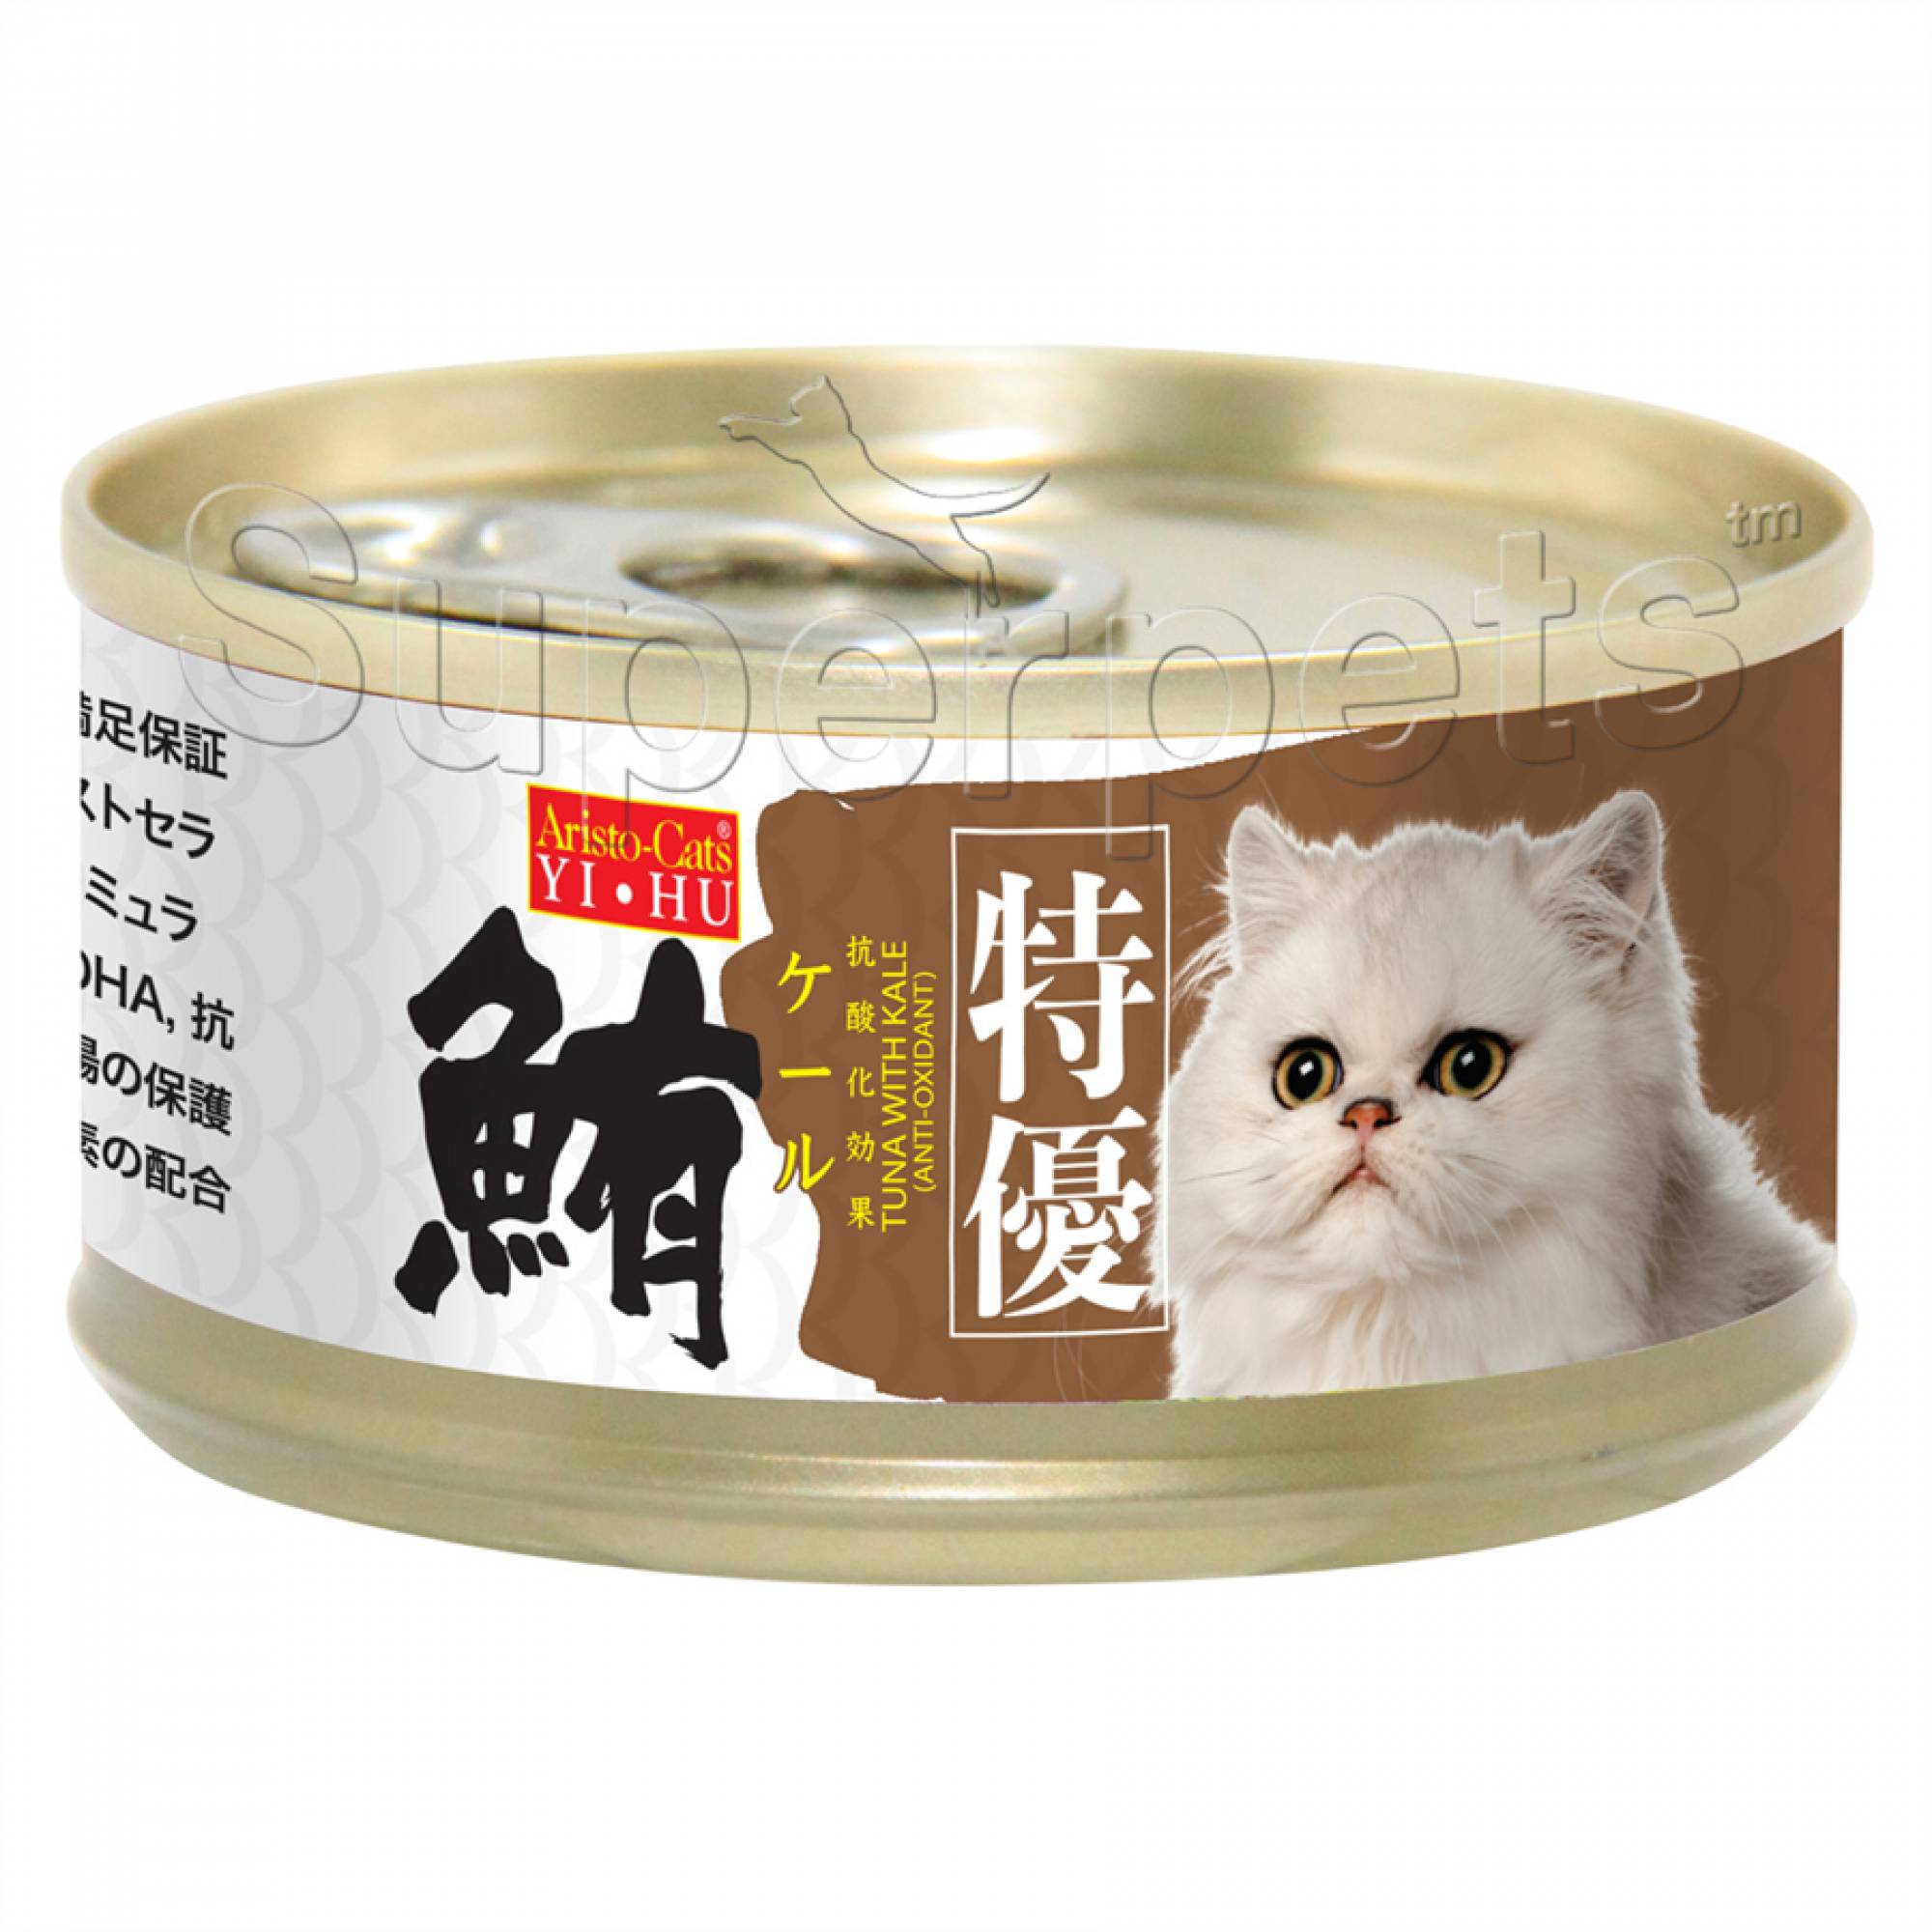 Aristo-Cats - Premium Plus (Export) - Tuna with Kale 80g